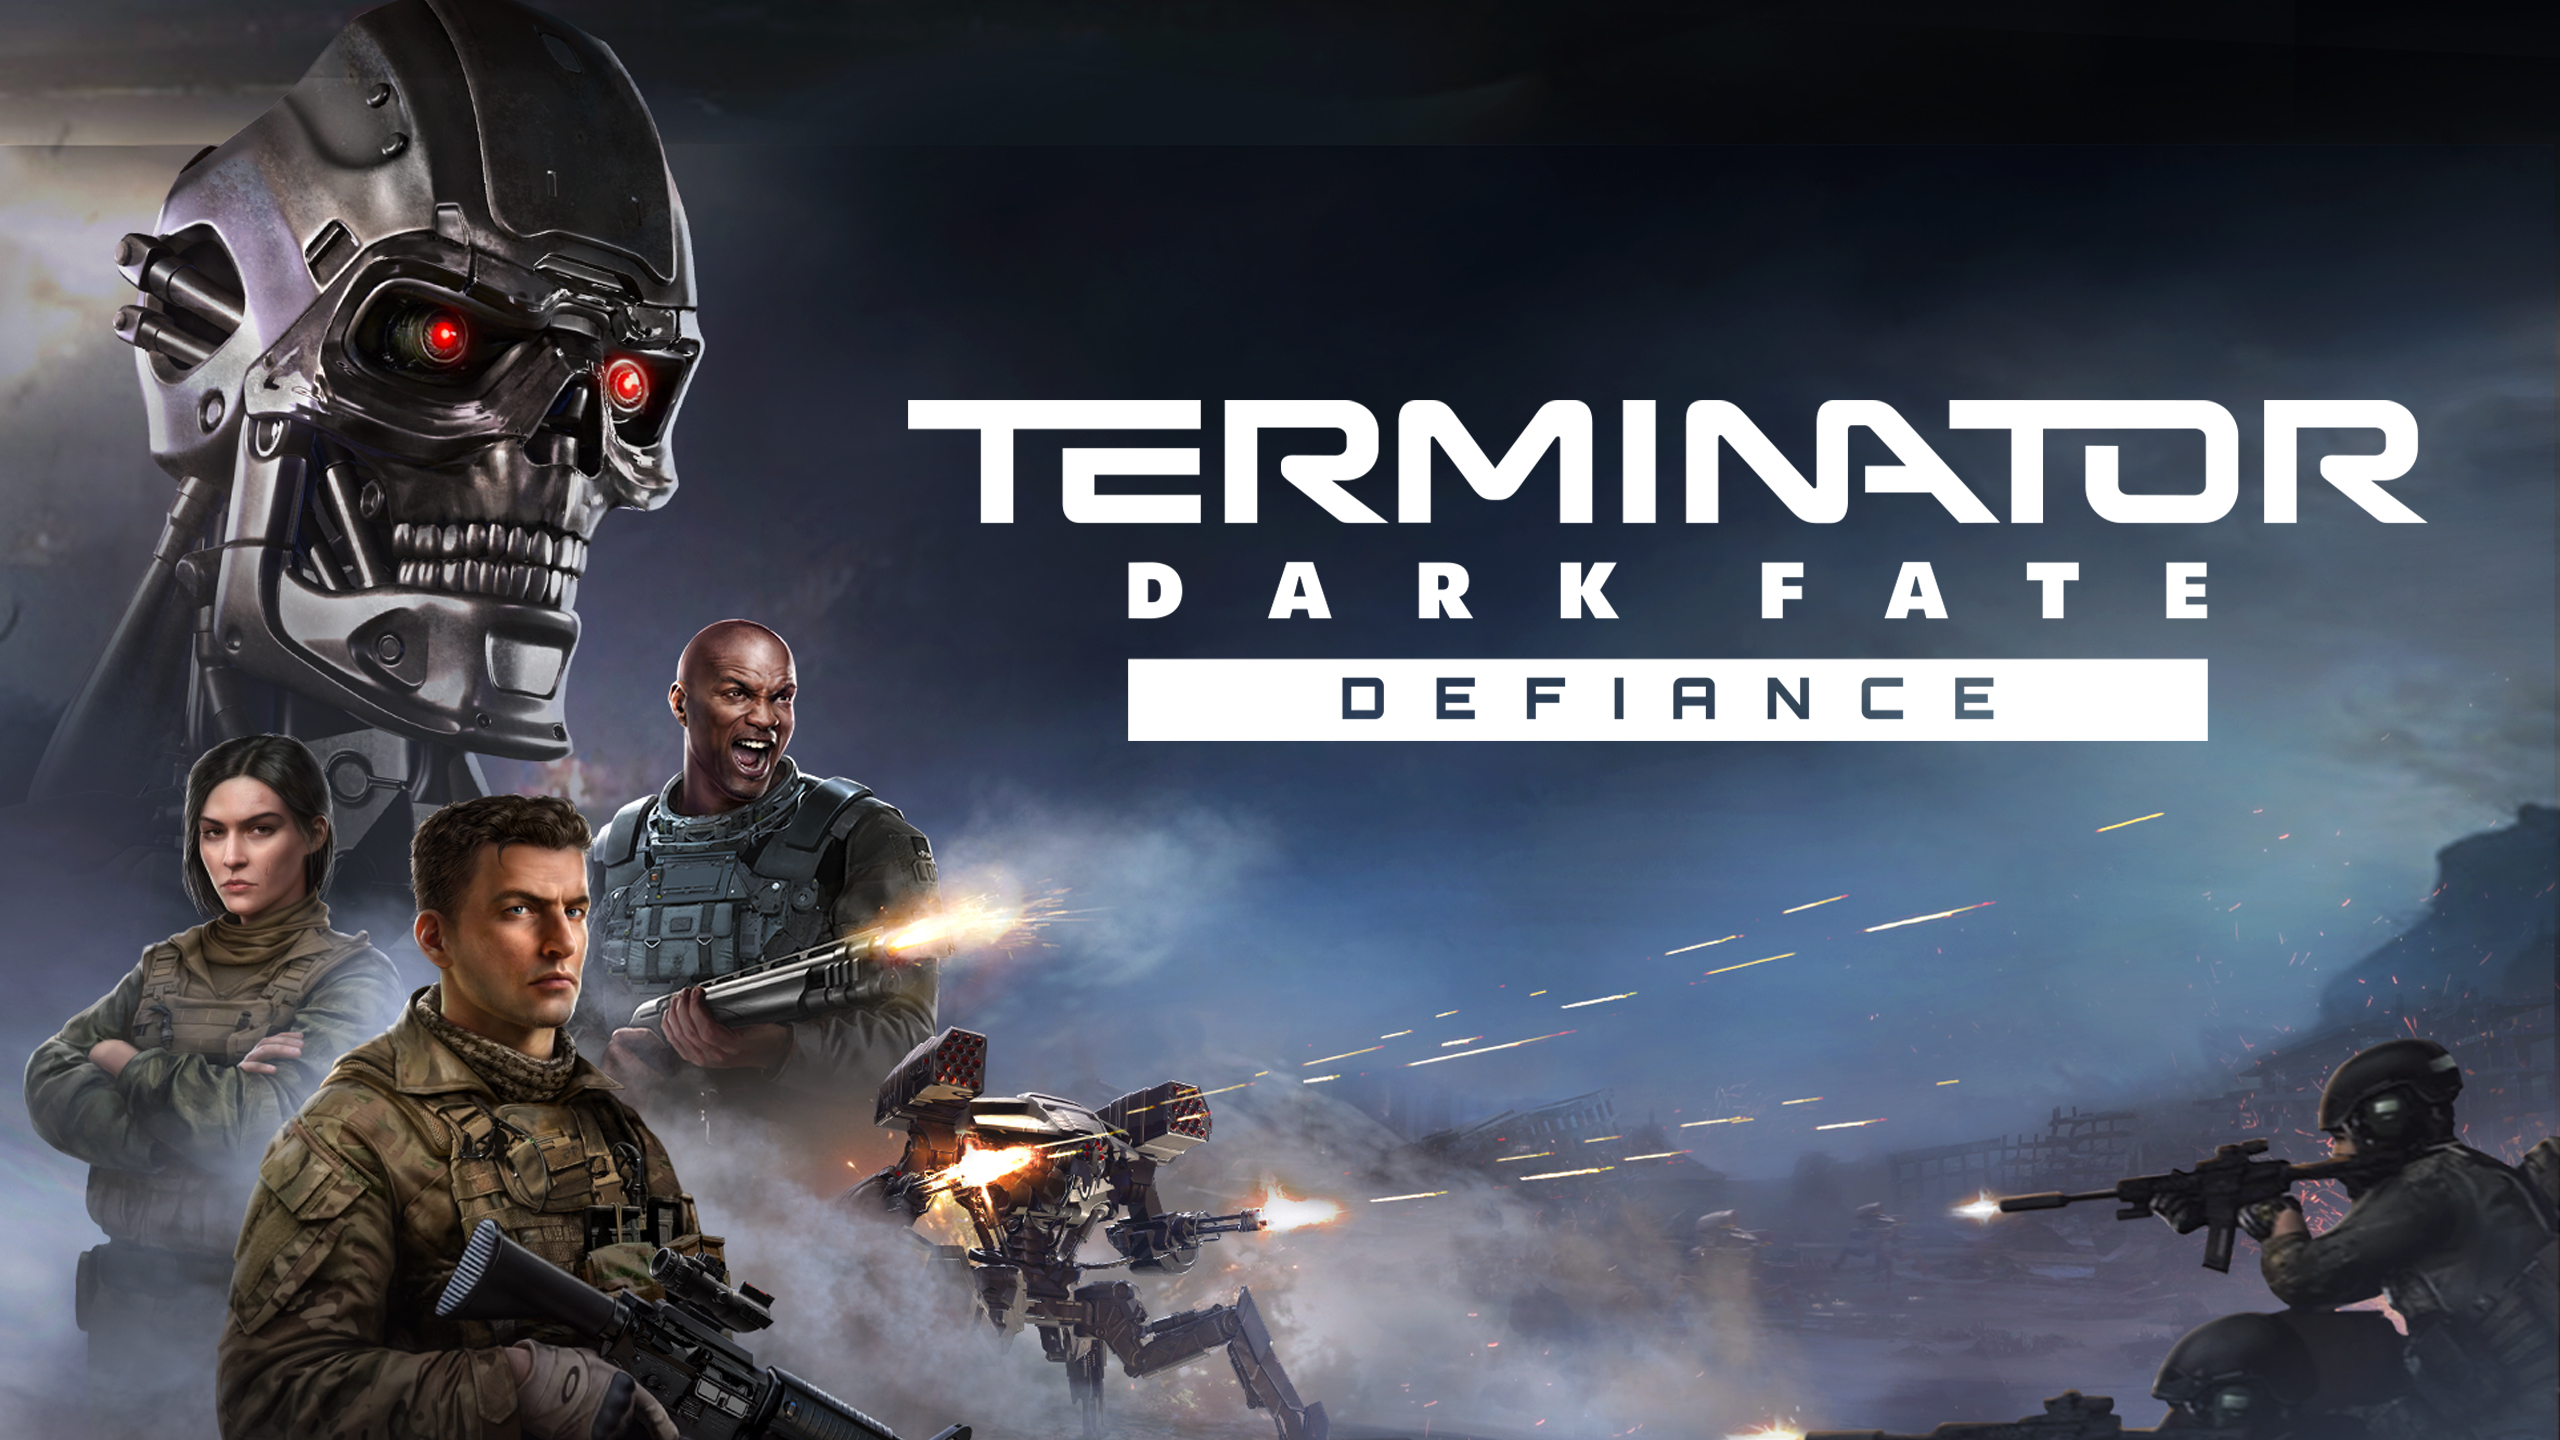 Игра Terminator Dark Fate - Defiance  стратегия в реальном времени.